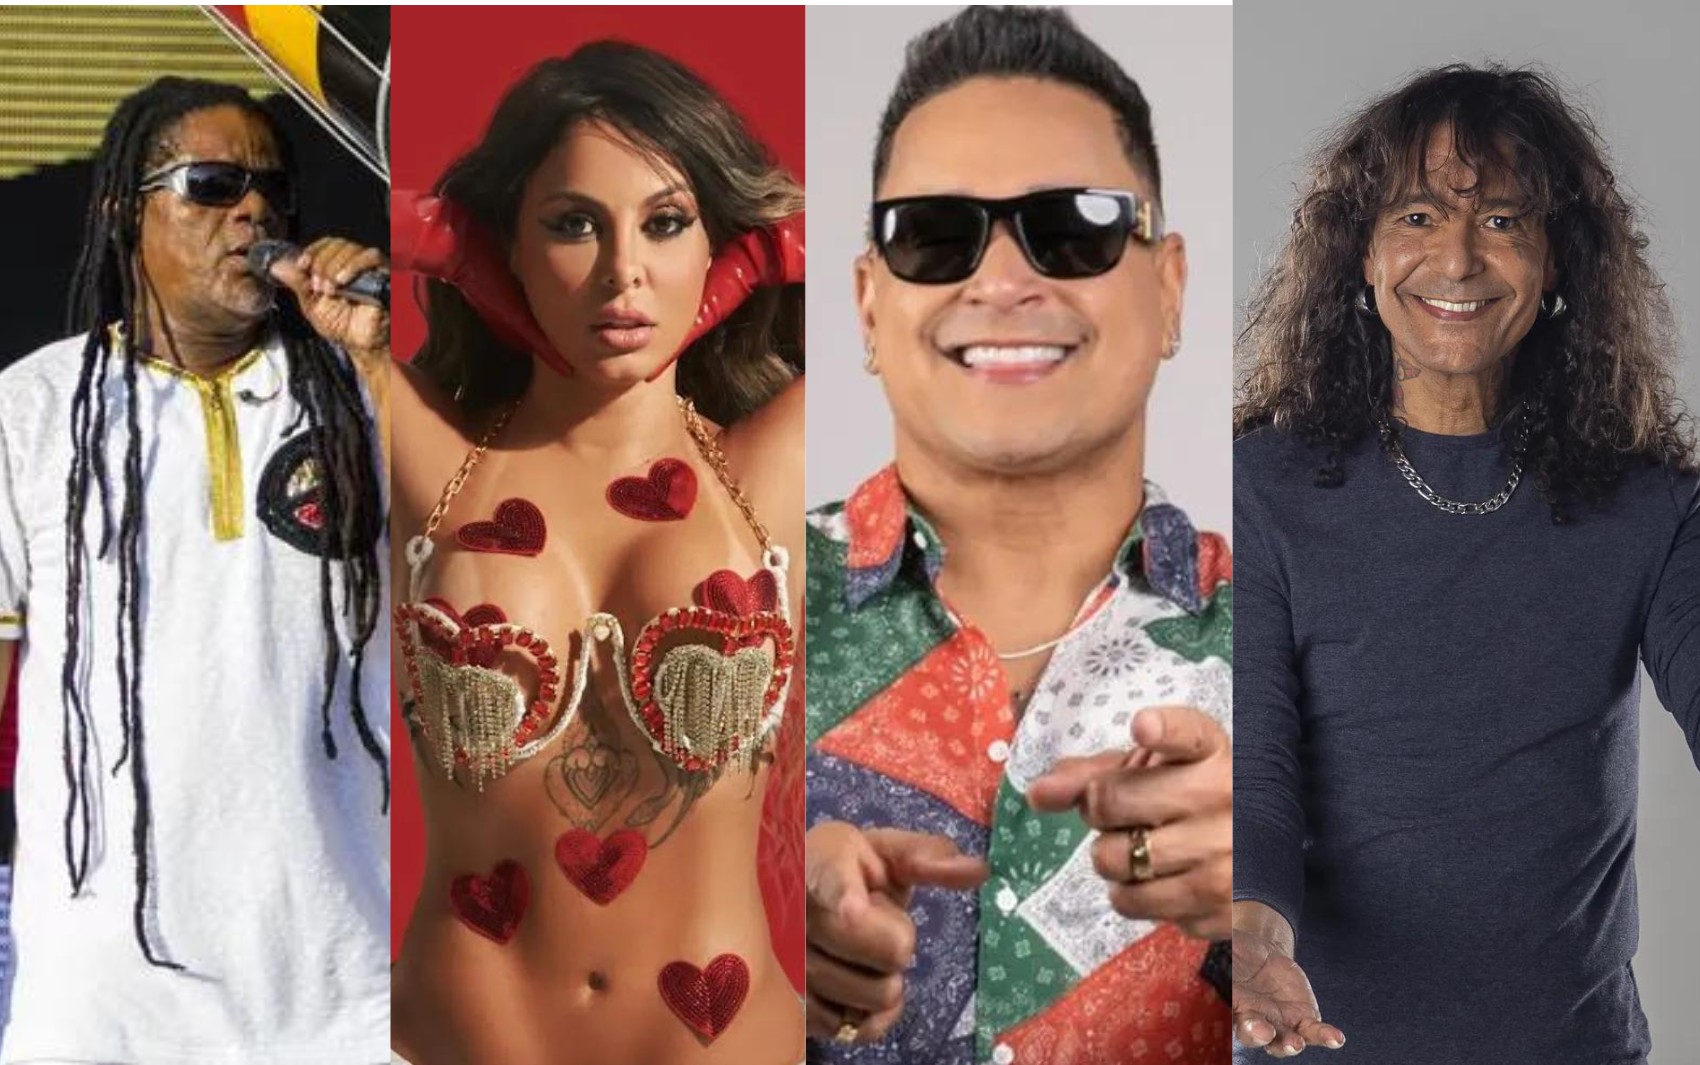 Olodum, Alinne Rosa, Xanddy Harmonia e Luiz Caldas são atrações do 2º dia da Micareta de Feira de Santana